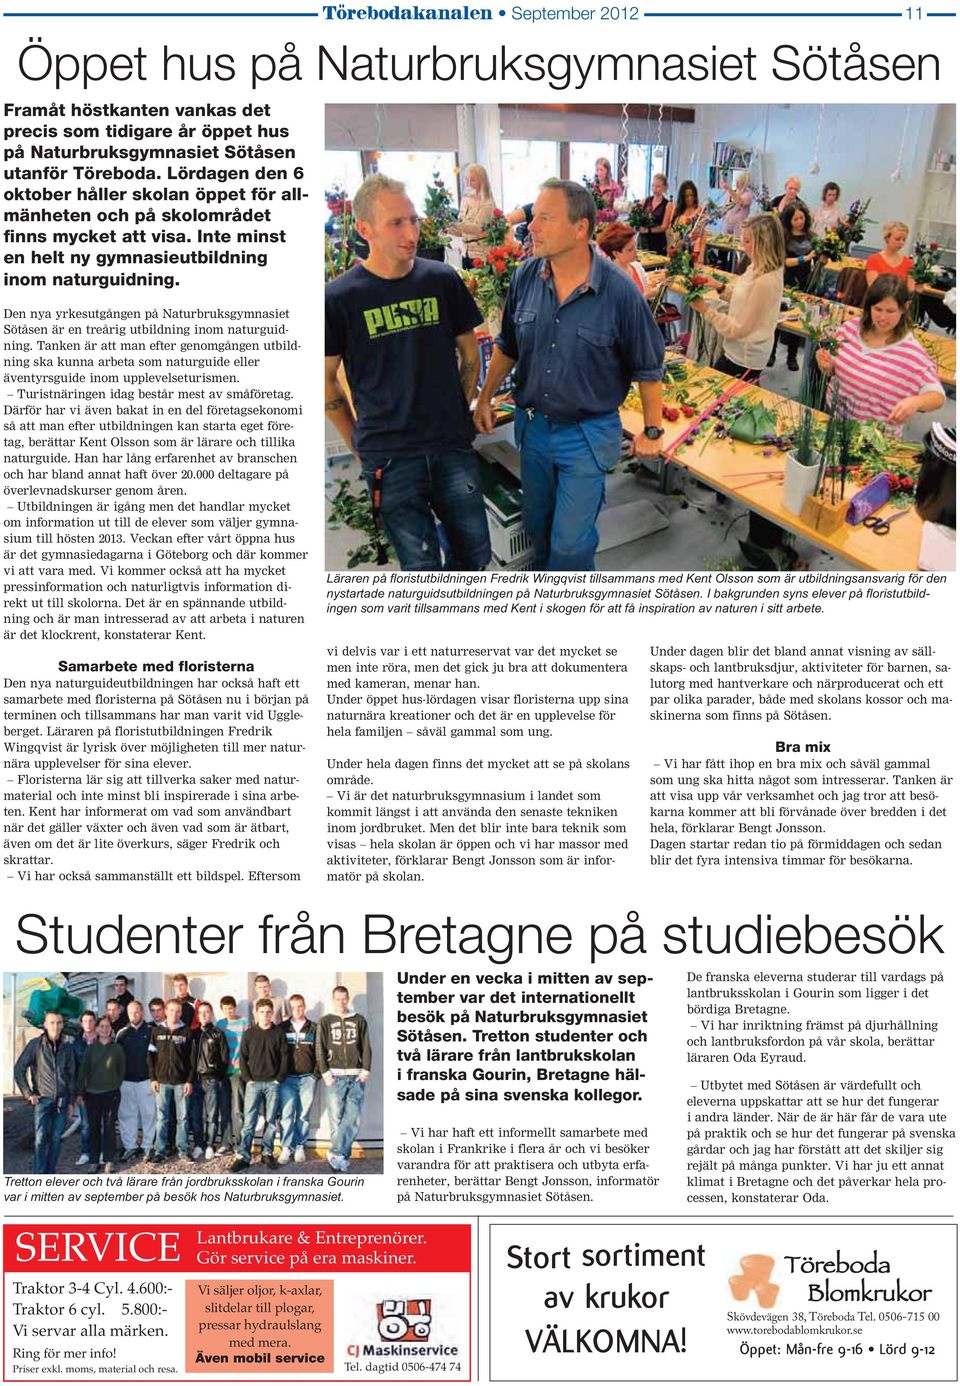 Den nya yrkesutgången på Naturbruksgymnasiet Sötåsen är en treårig utbildning inom naturguidning.